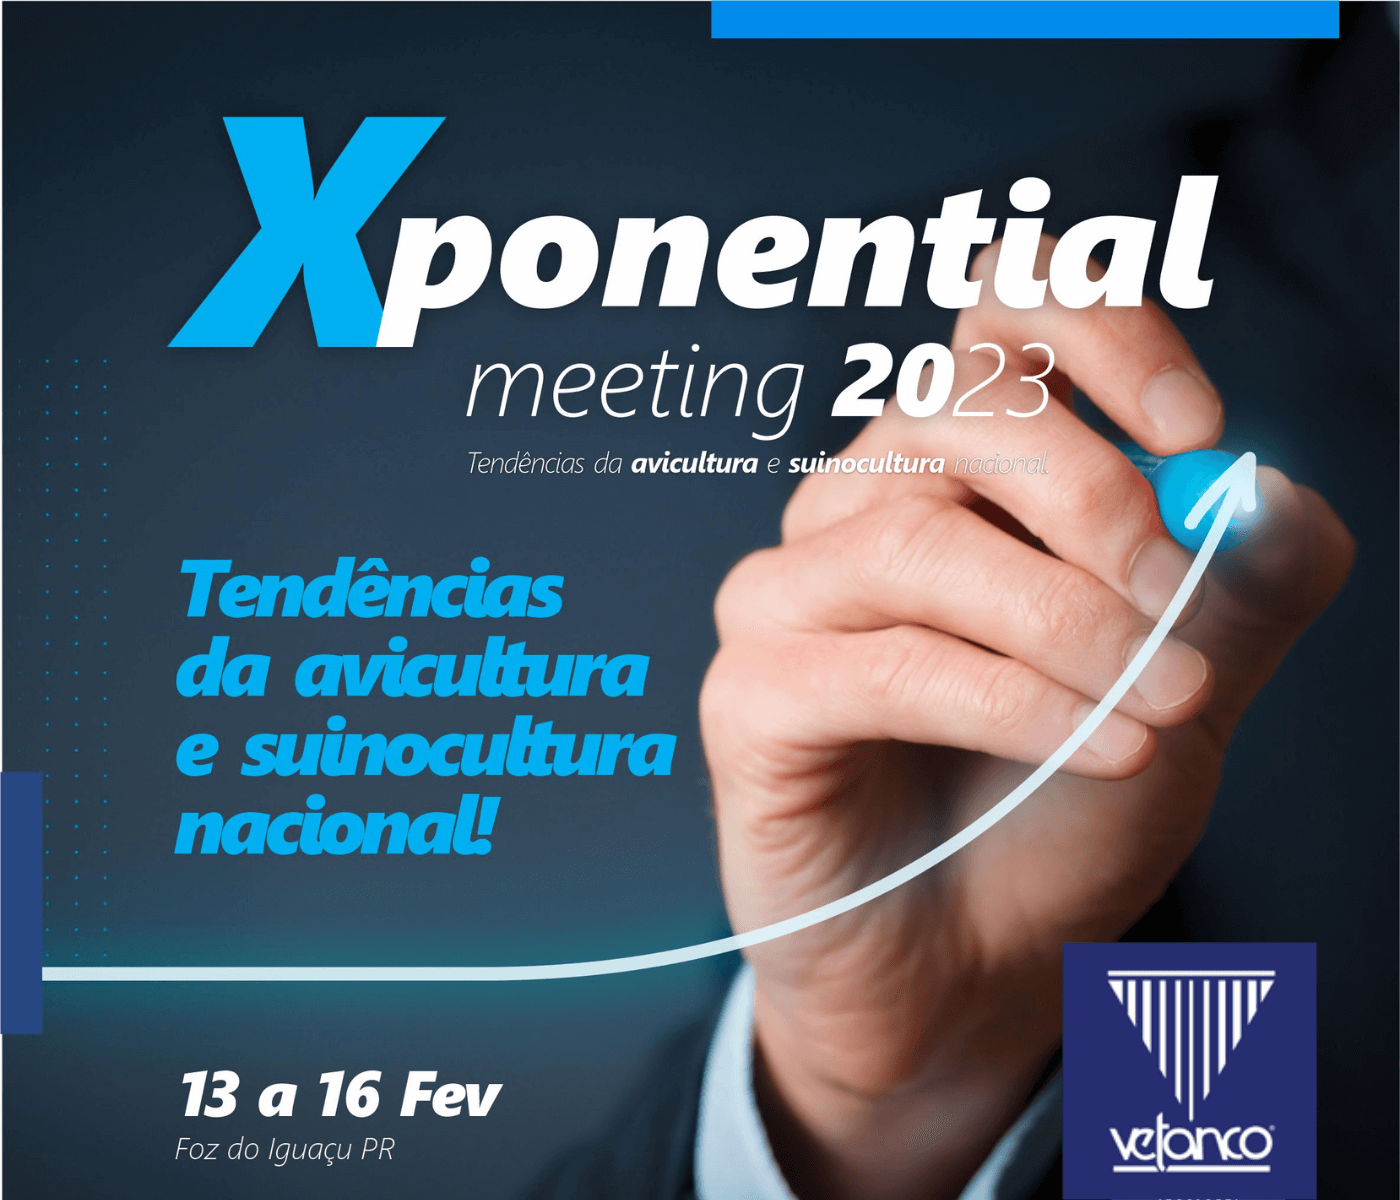 Xponential Meeting Vetanco retorna com informações exponenciais sobre mercado, tendências...